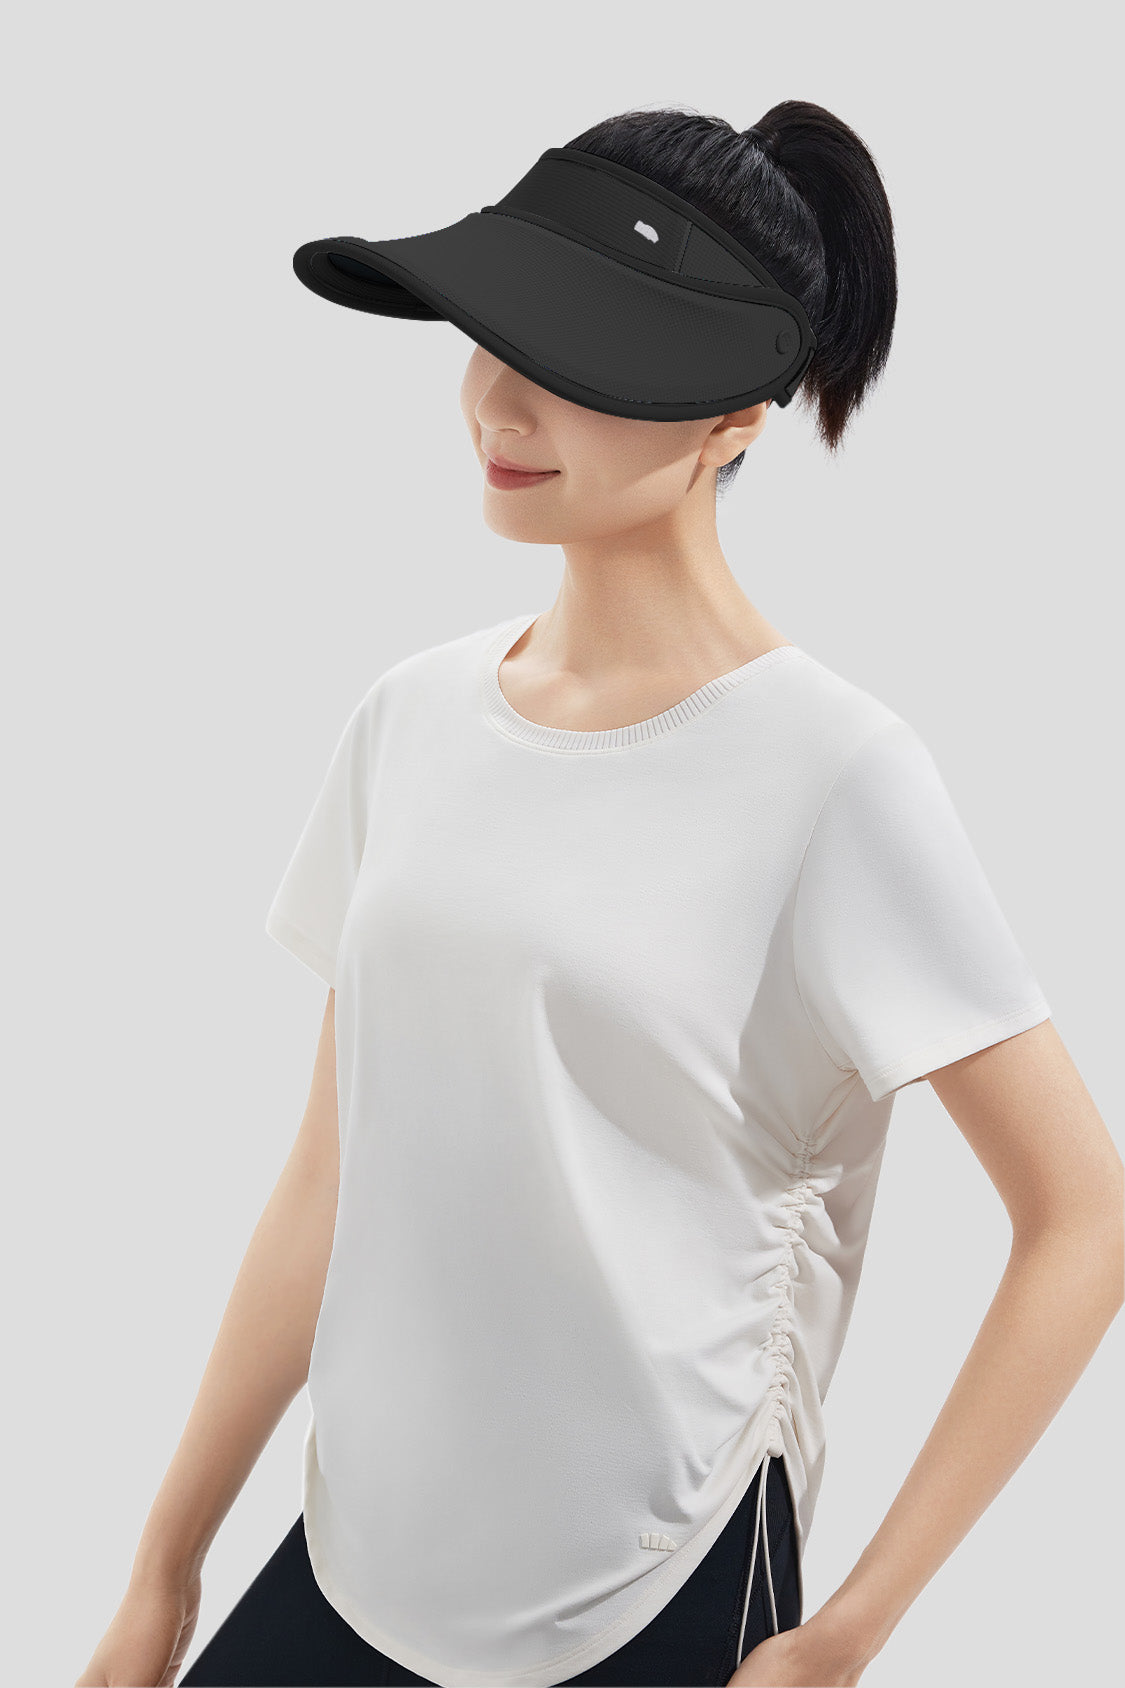 Sun Protection Hat for Women, Beneunder UV Protection Sun Visor Hat UPF50+ One Size - Adjustable / White